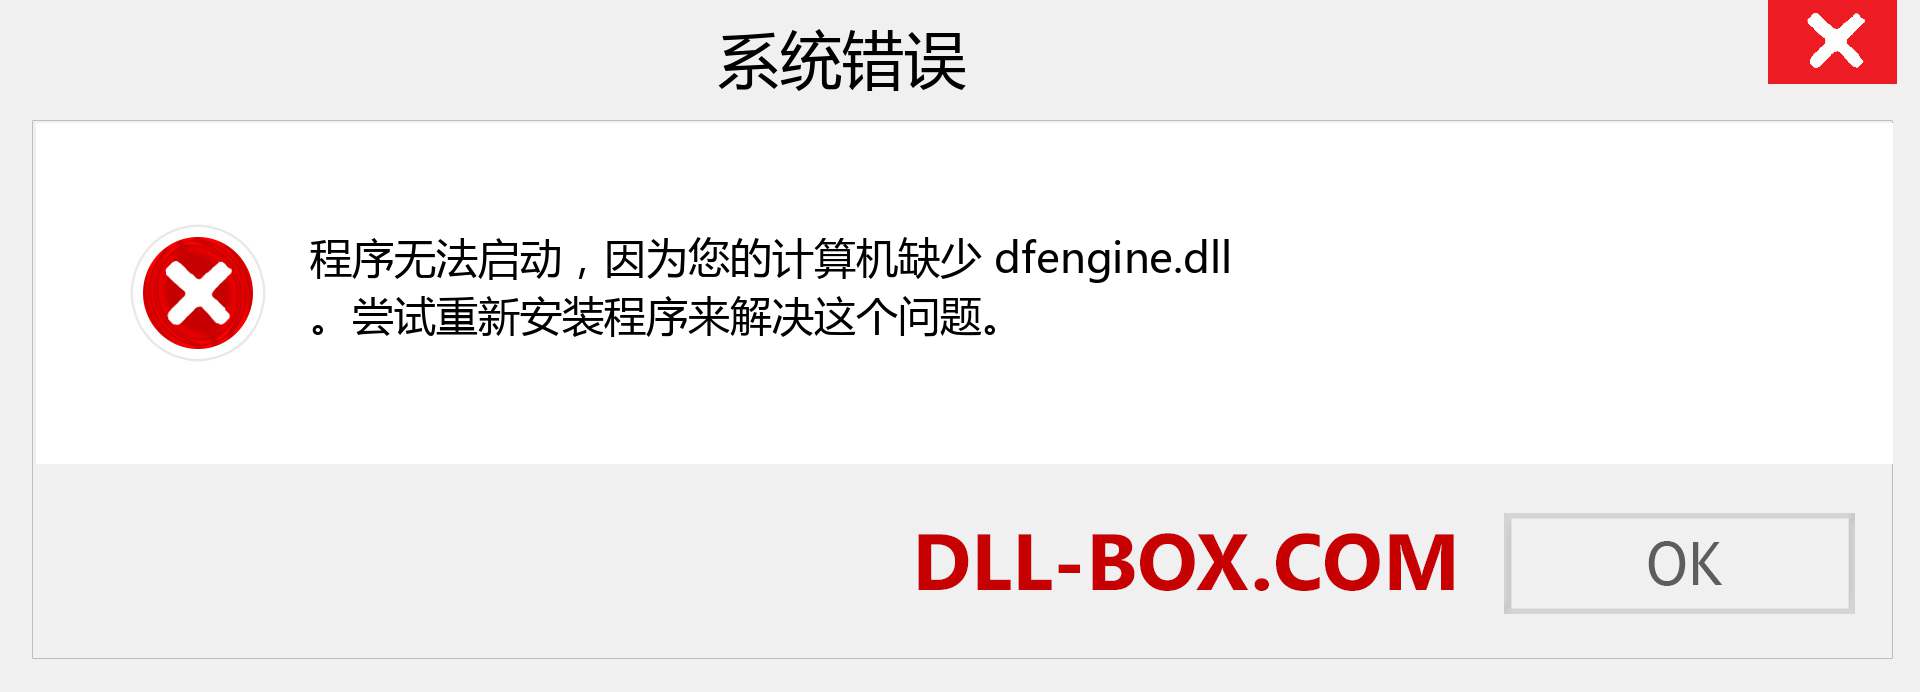 dfengine.dll 文件丢失？。 适用于 Windows 7、8、10 的下载 - 修复 Windows、照片、图像上的 dfengine dll 丢失错误